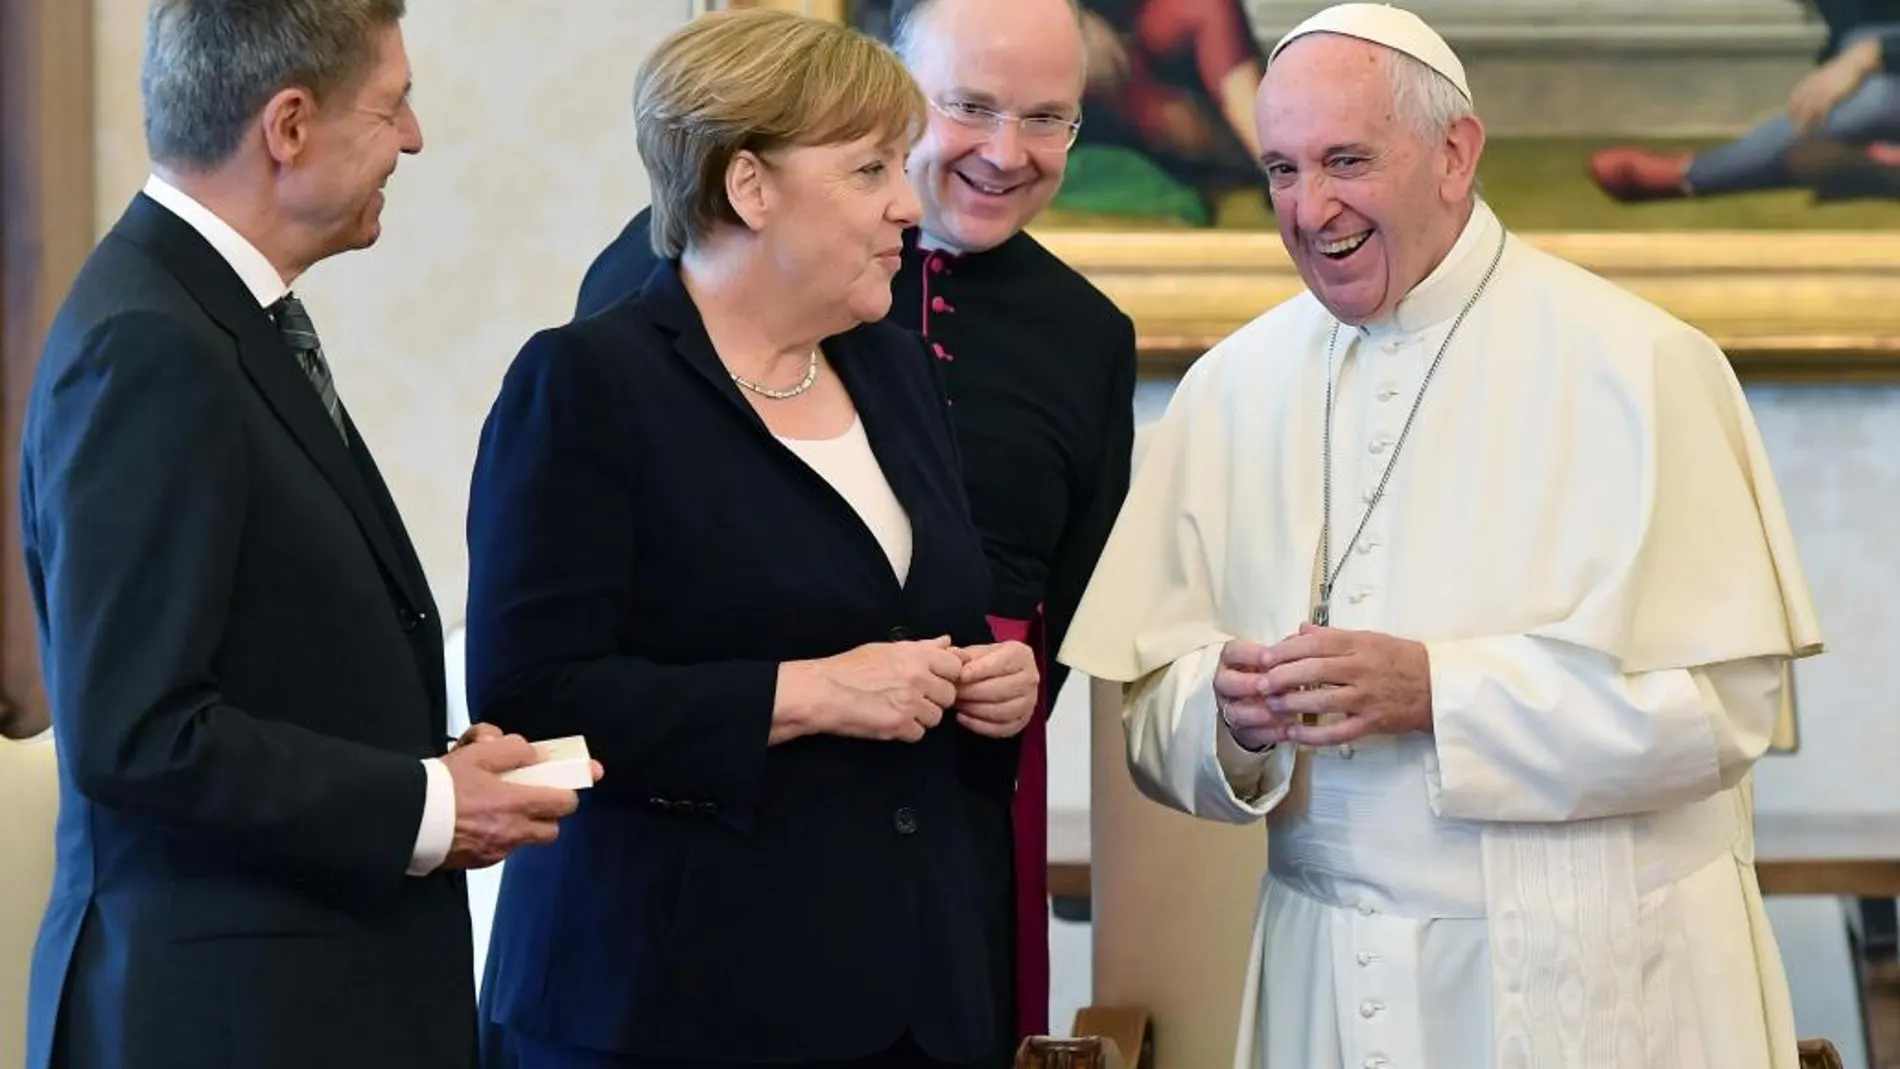 El Papa y Merkel han charlado de forma distendida antes de su reunión privada